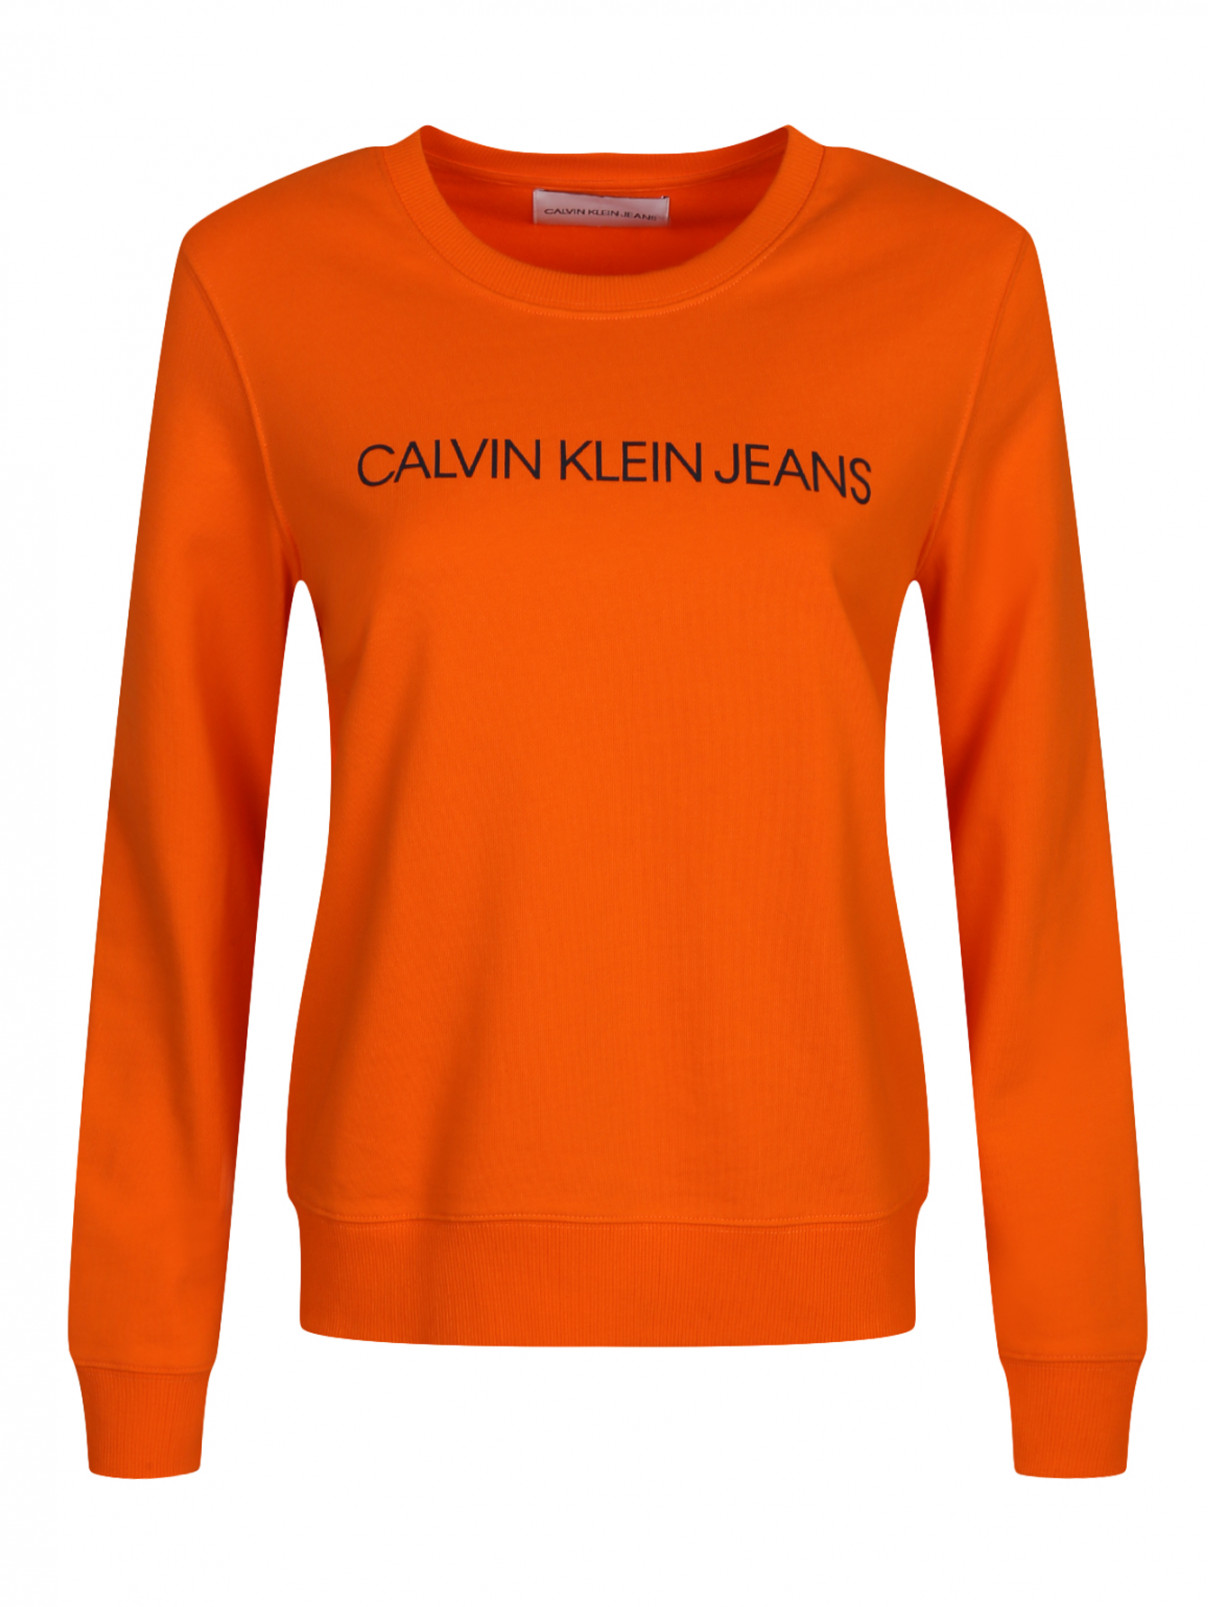 Свитшот из хлопка с принтом Calvin Klein  –  Общий вид  – Цвет:  Оранжевый